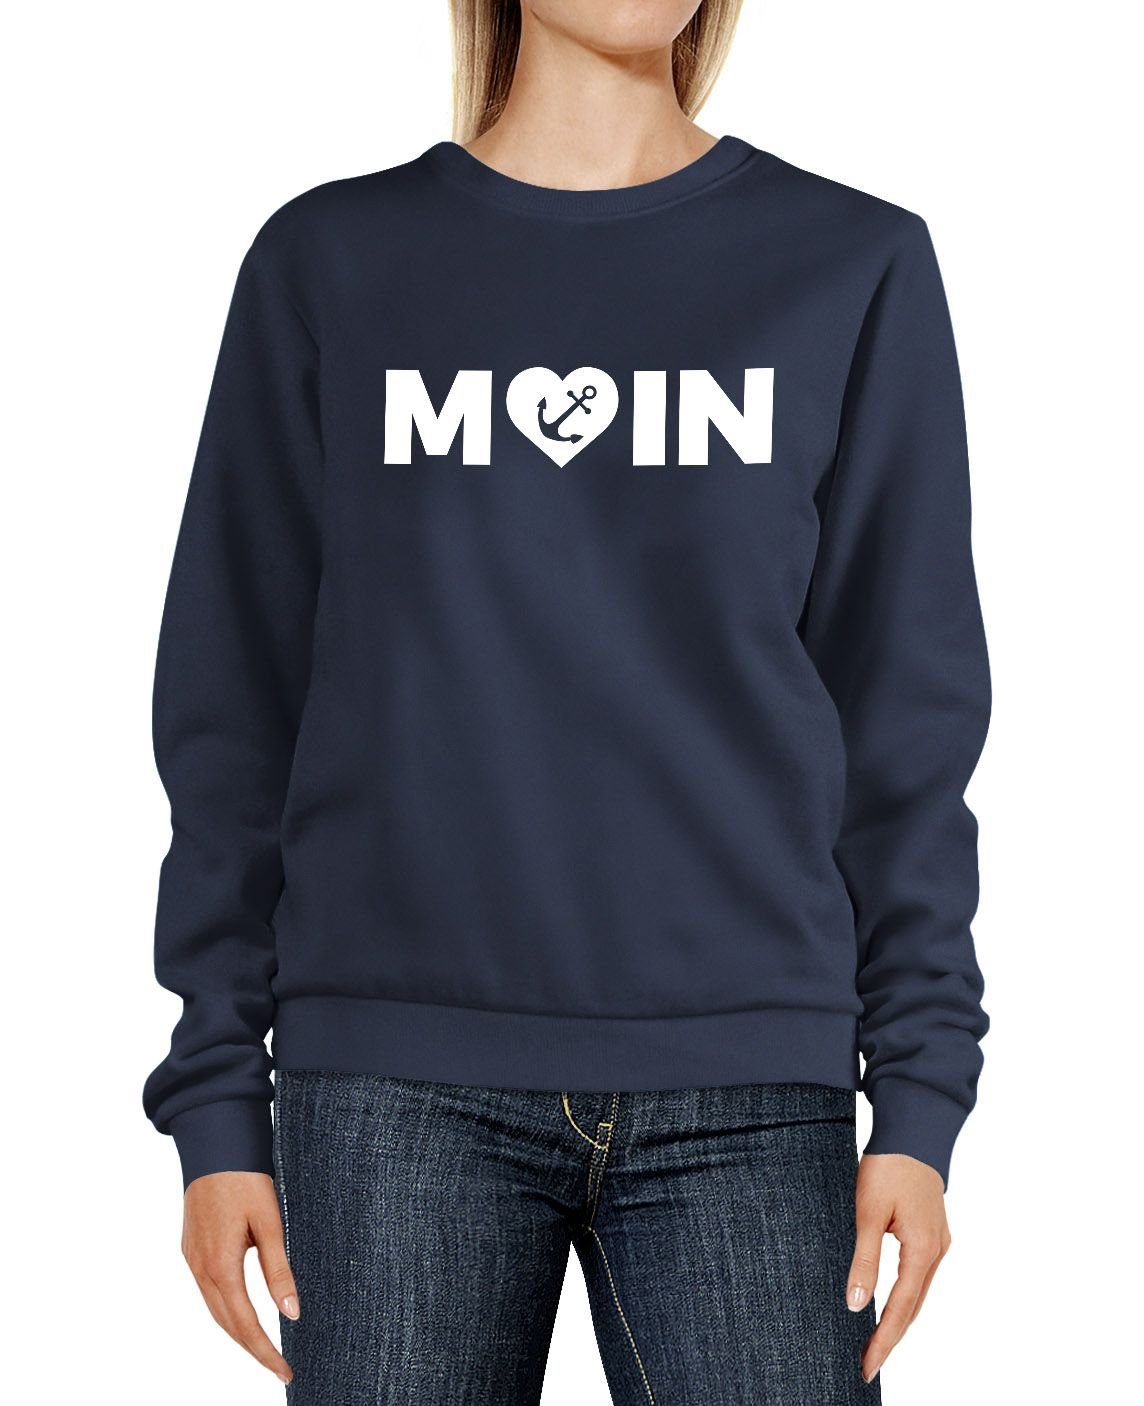 MoonWorks Sweatshirt Sweatshirt Damen Aufdruck Moin Herz mit Anker Rundhals-Pullover Pulli Sweater Moonworks® navy